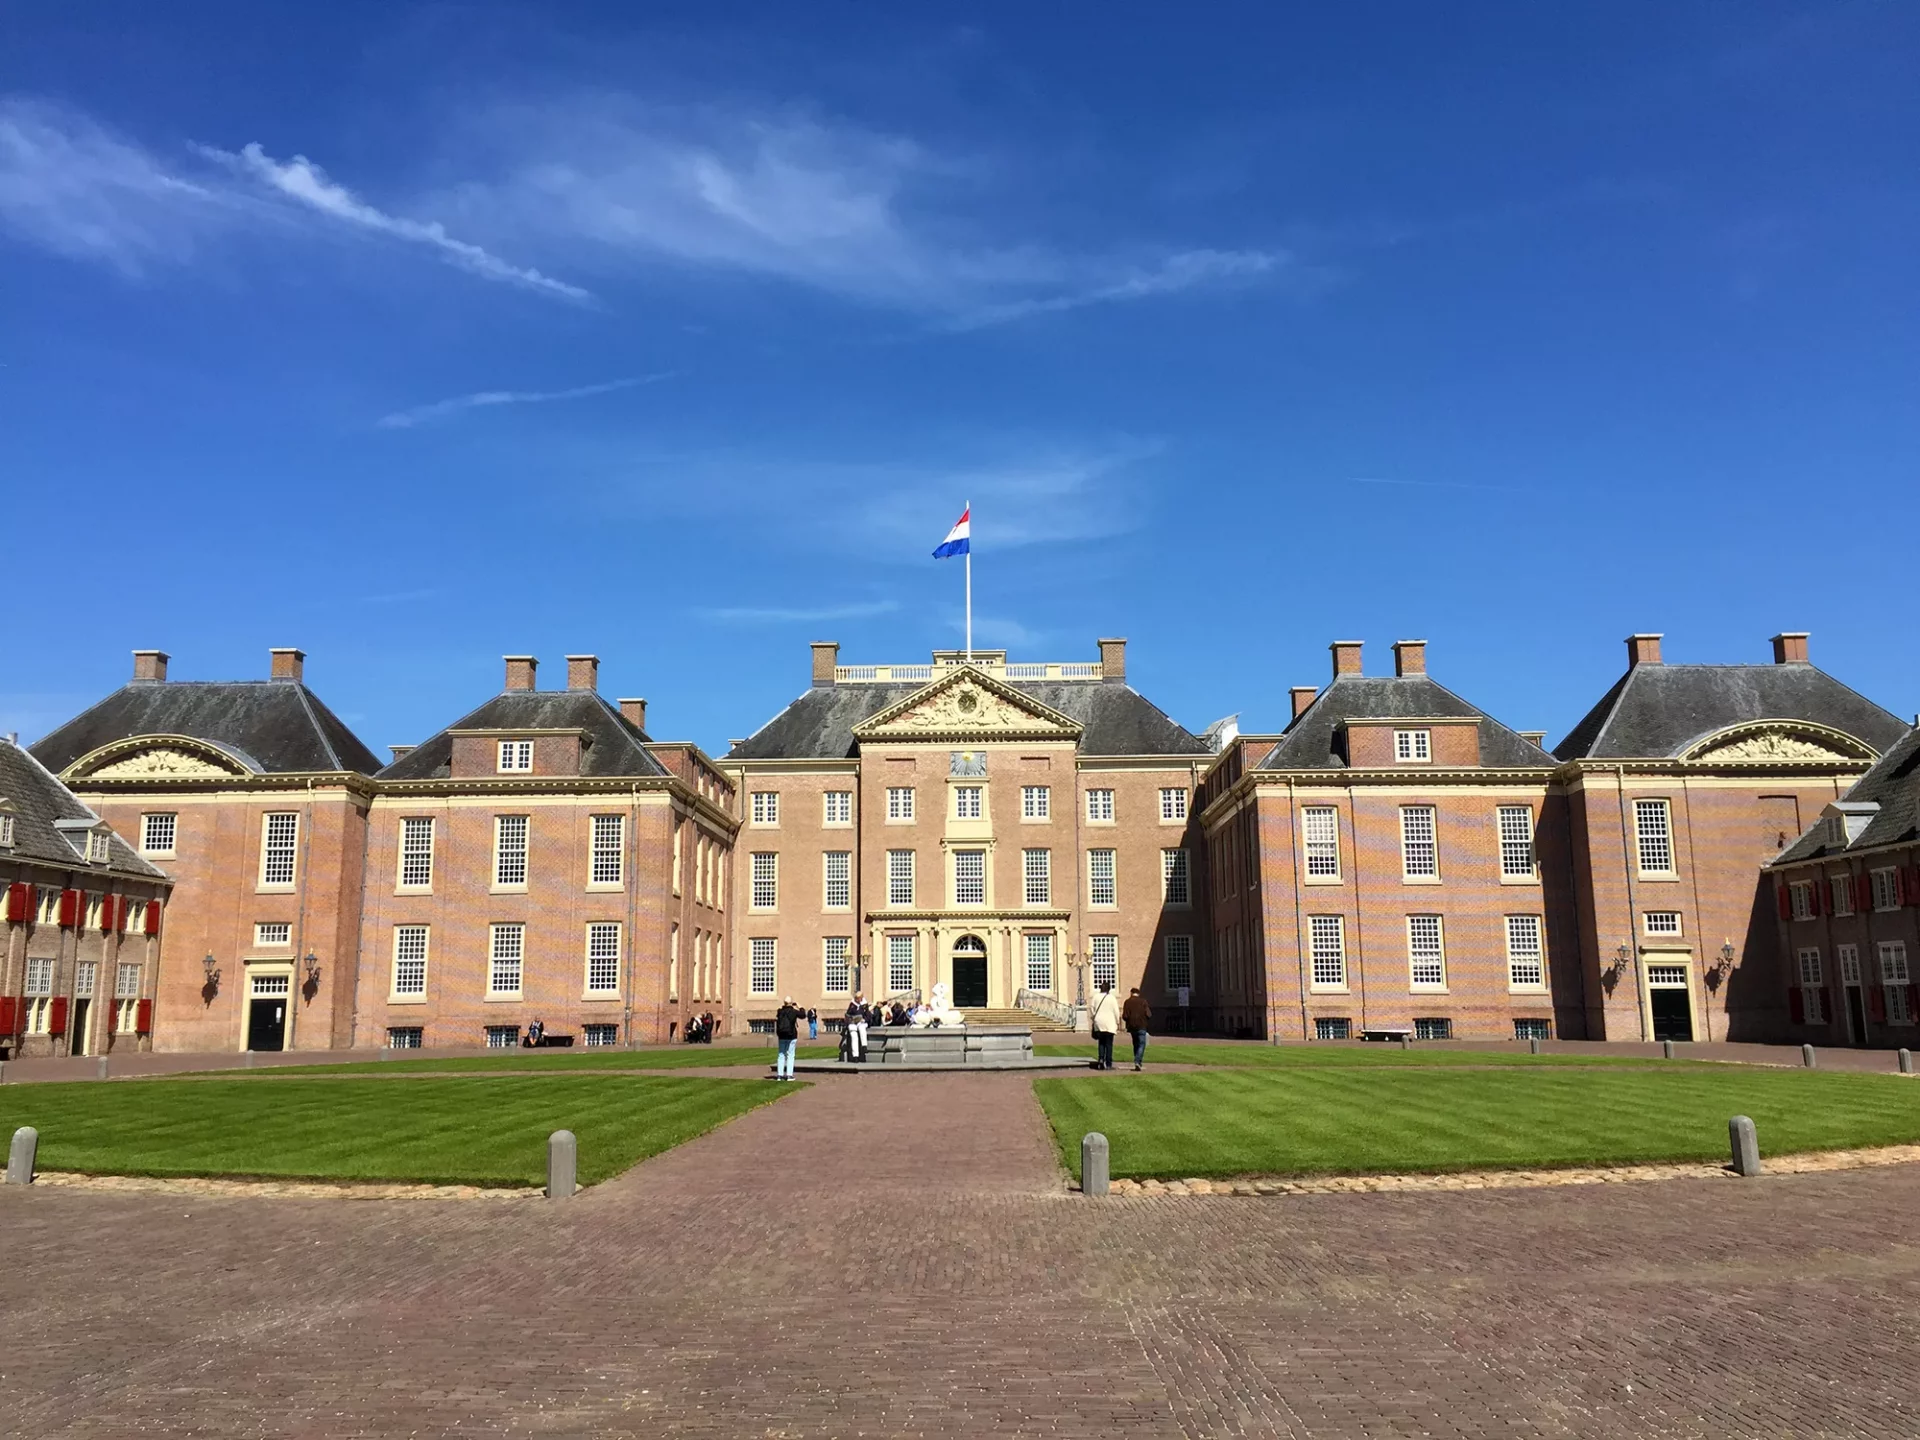 Urlaub in Apeldoorn - herrschaftliches Gebäude des Het Loo Nationalmuseums